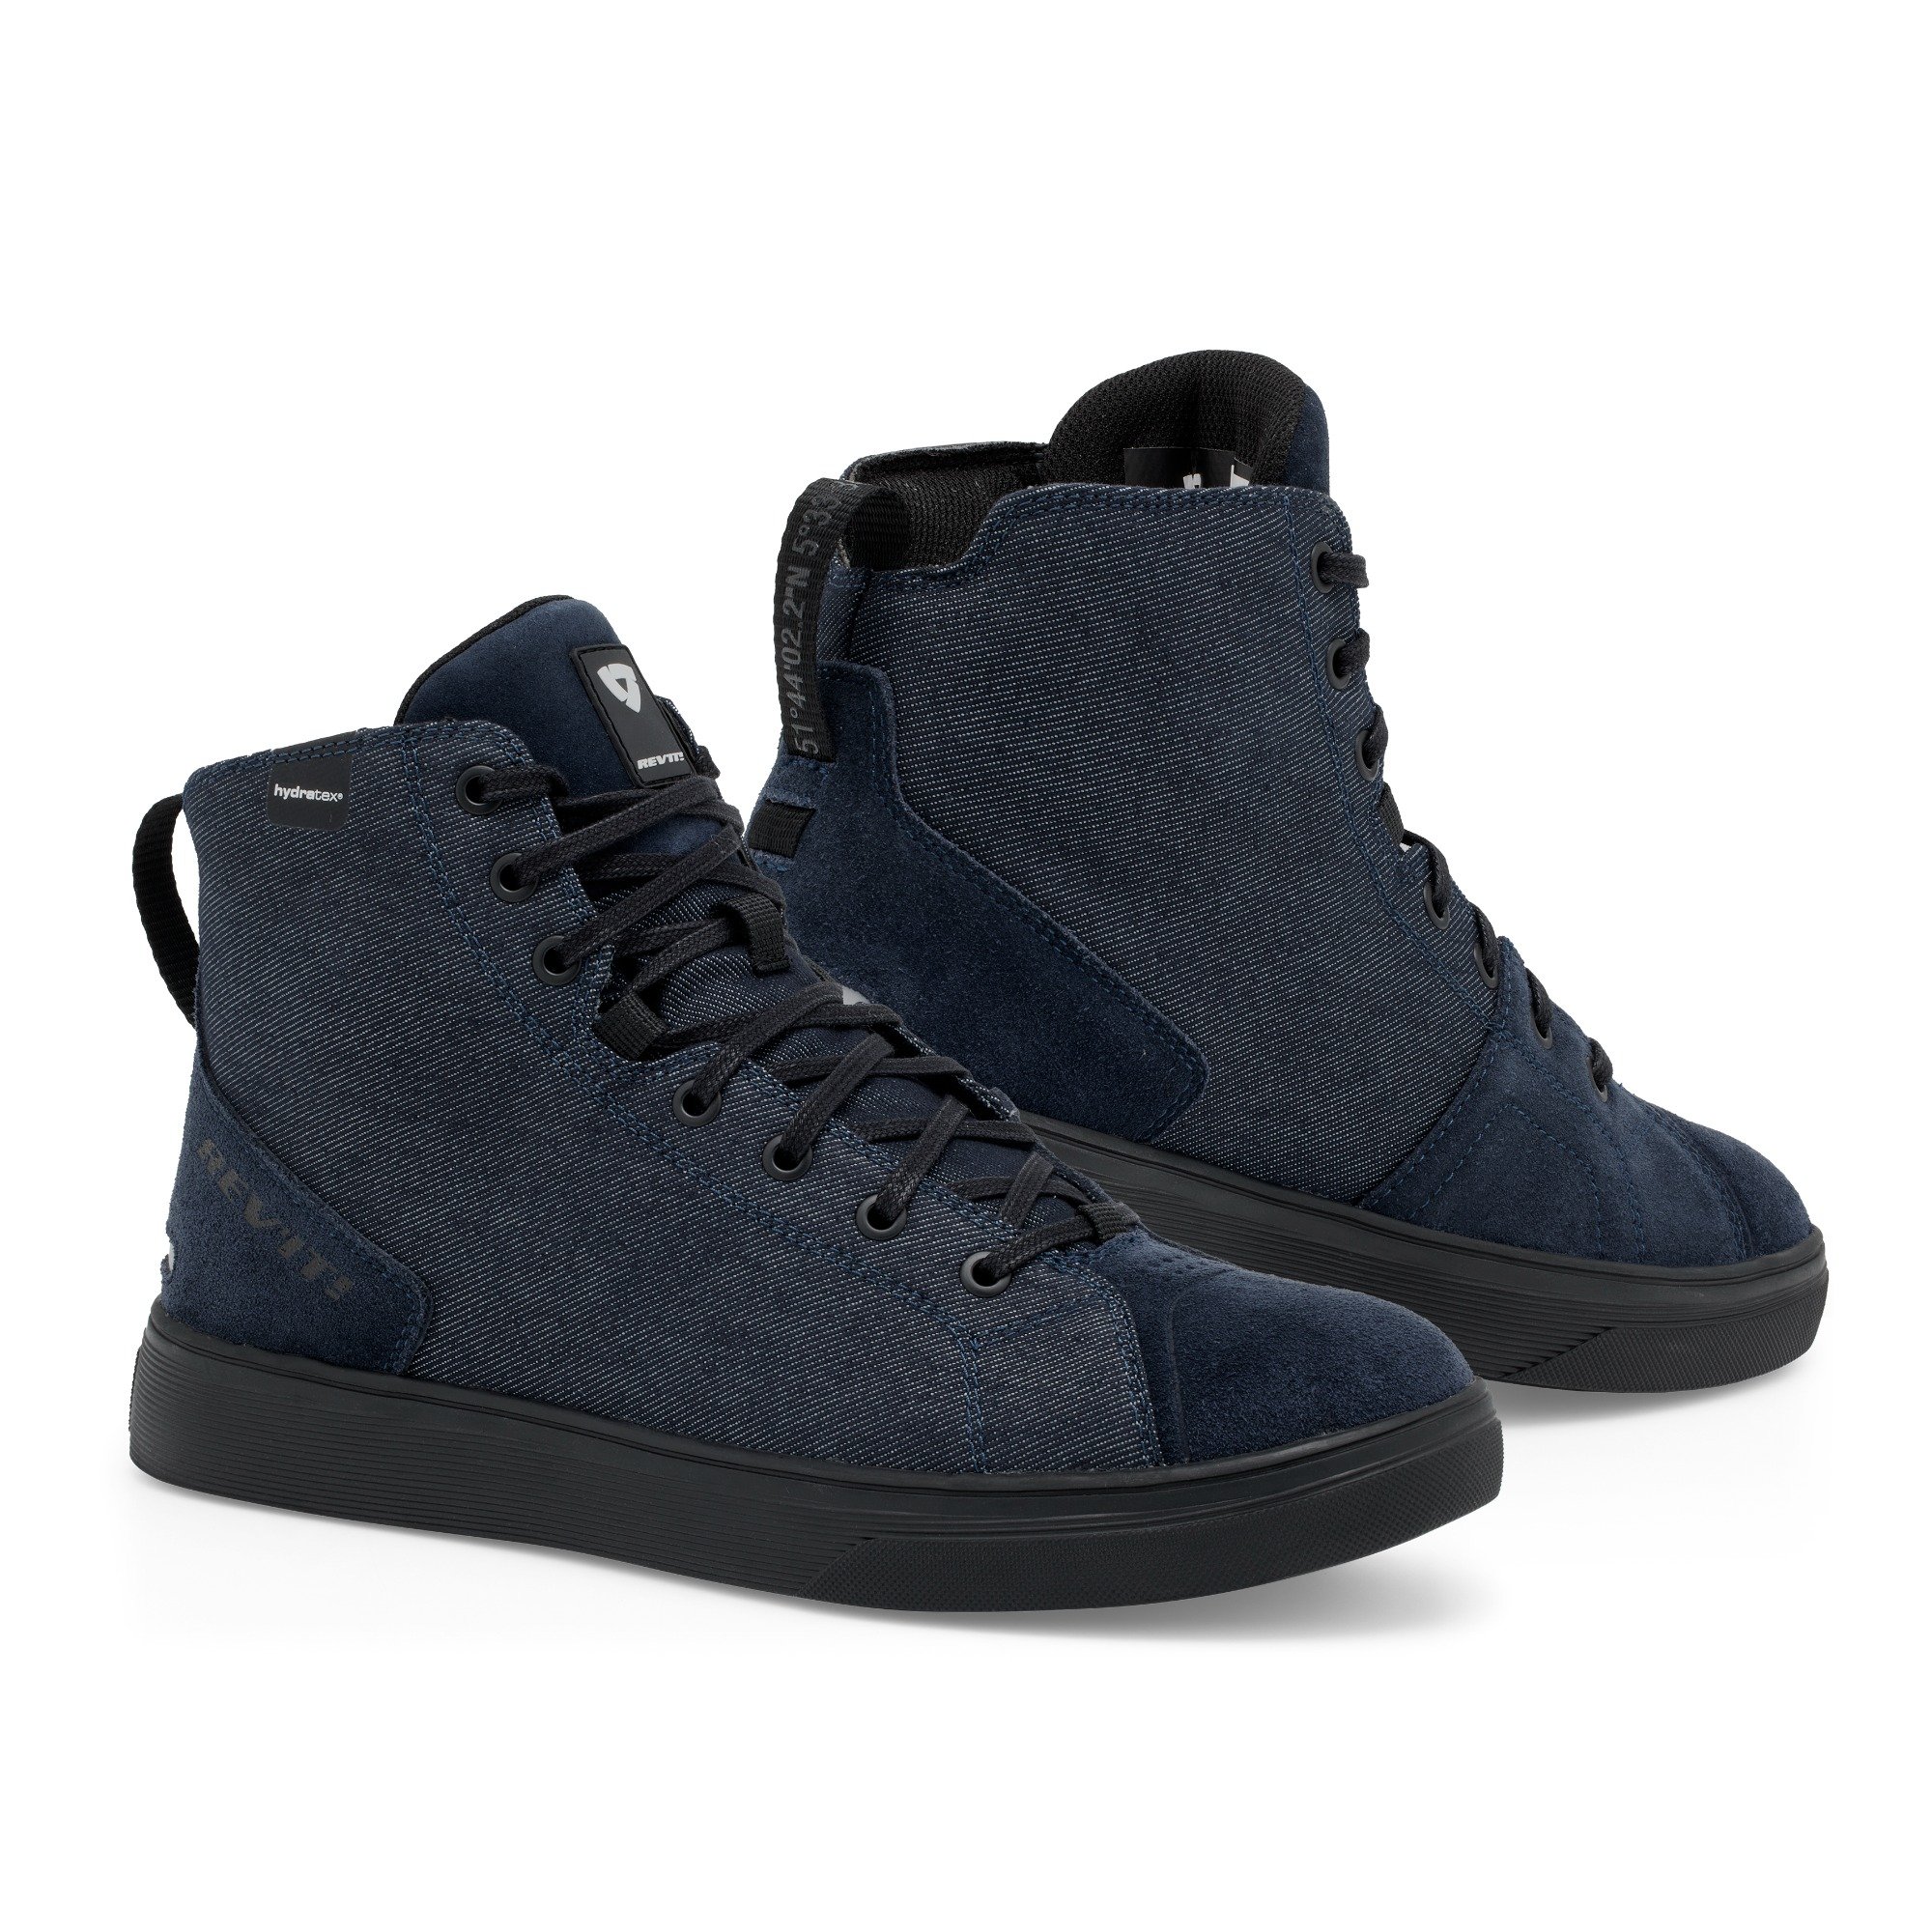 Image of REV'IT! Delta H2O Shoes Dark Blue Black Size 43 EN